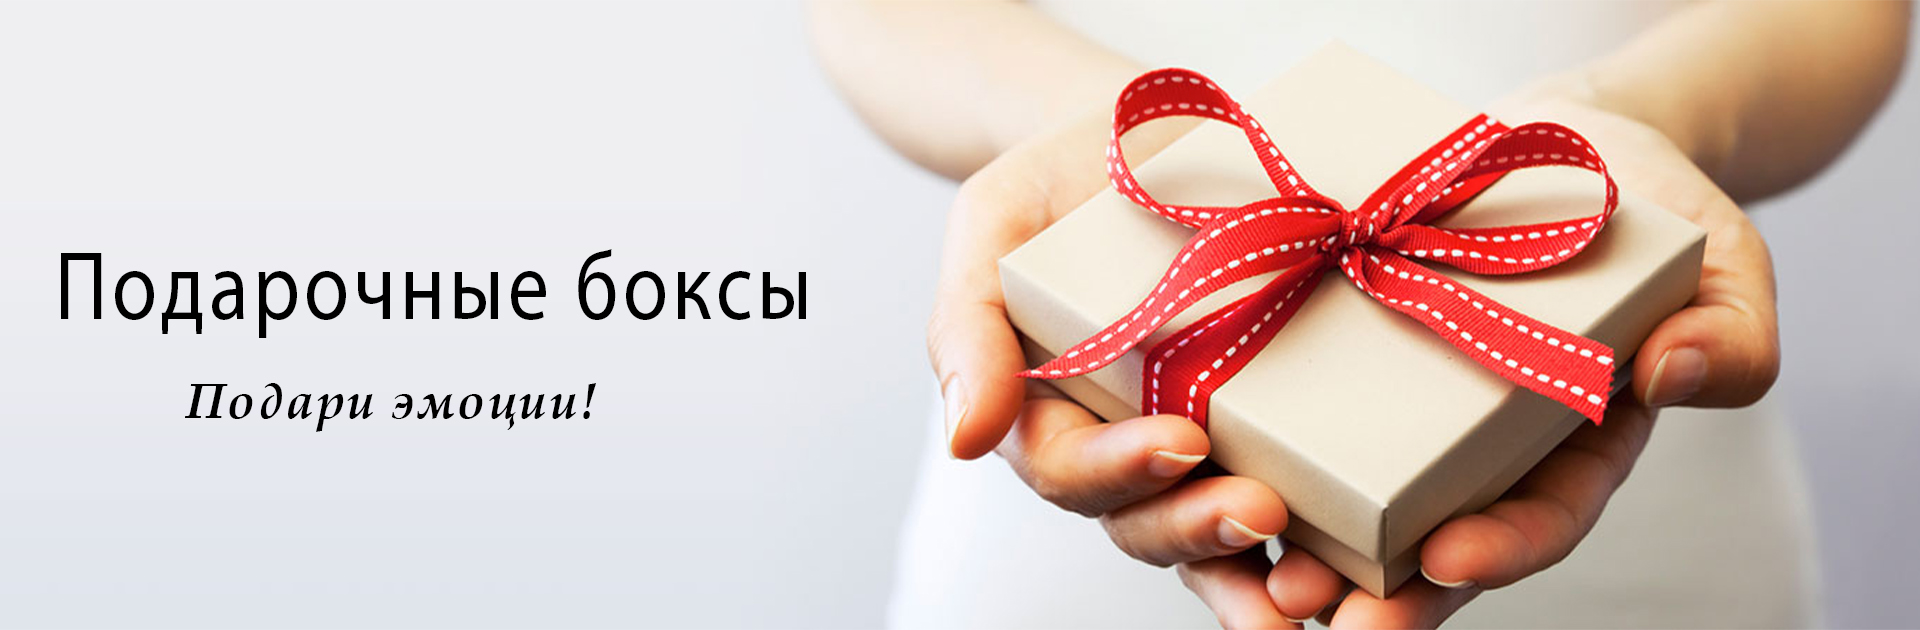 Разработка сувенирной продукции и подарков в Минске